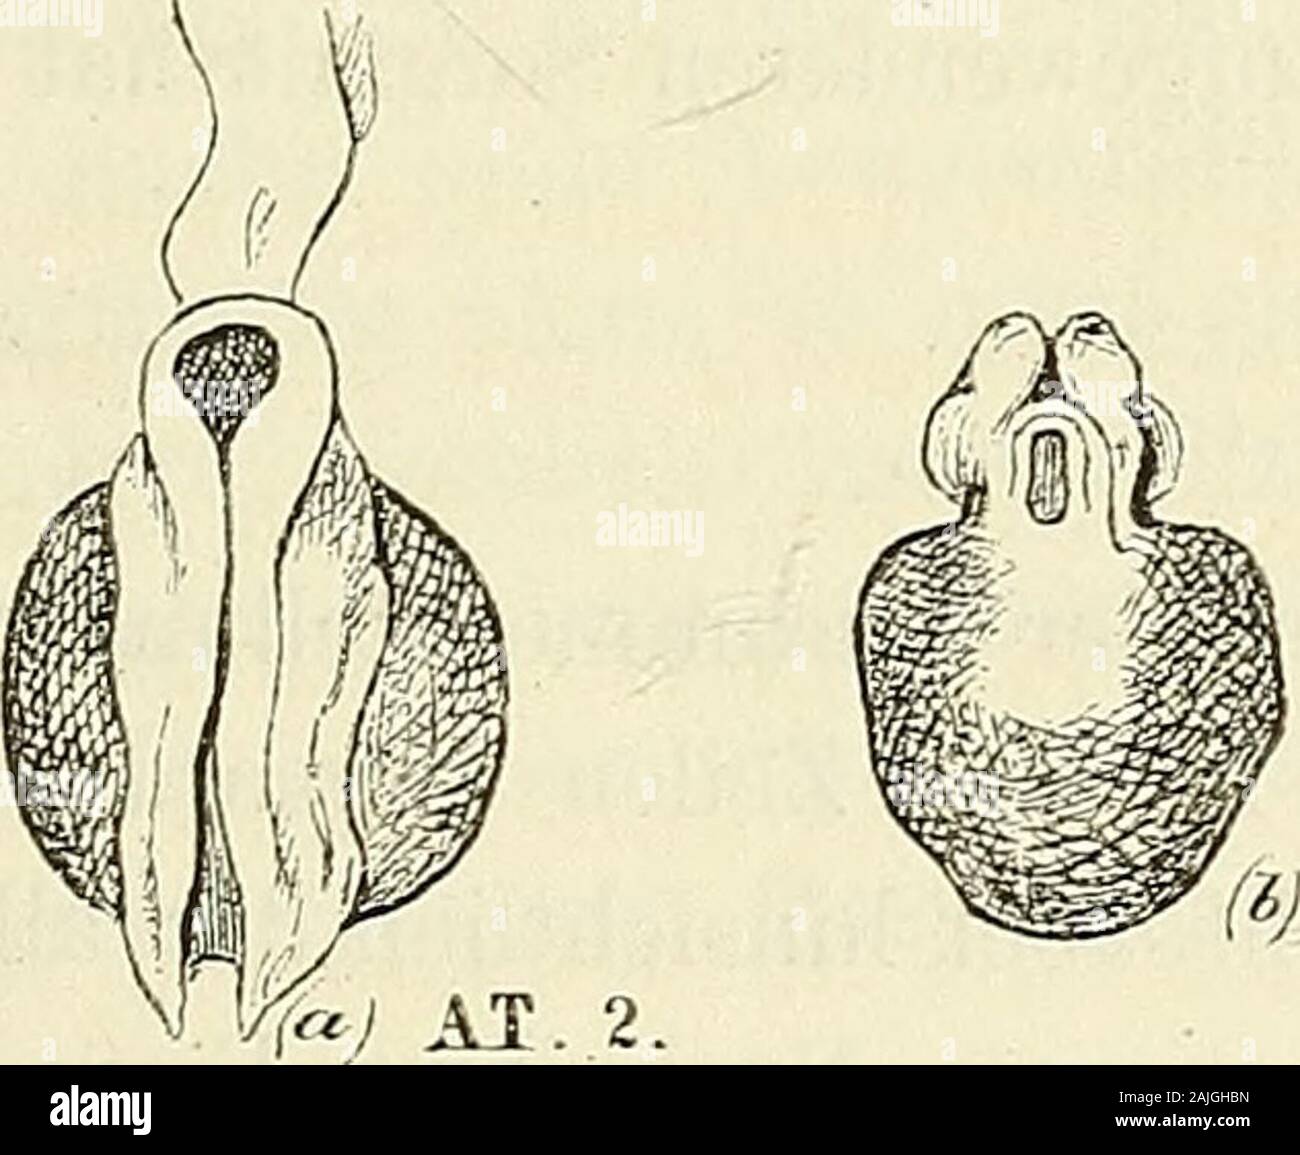 Anatomie menschlicher Embryonen . usgeführten Zeichnungen,unter denen zwei bis dahin unpublicirte Ansichten des Embryo 2sich befinden, geben nun über den uns beschäftigenden Punktneue und höchst befriedigende Auskunft. Zunächst die vielcopirte Erster Monat. Formen vor Eintritt der Nackenkrümmung. 35 Dorsalansicht: in der ßeproduction des Edinb. med. and surg. Jour-nal von 1839 schliesst die Medullarfurclie nach rückwärts, ähnlichwiej nach vorn damit ab, dass die beiden Seitenwände abgerundet ineinander übergehen und somit eine Art von Bhndsack umschliessen.Die Originalzeichnung, die ich mit de Stock Photo